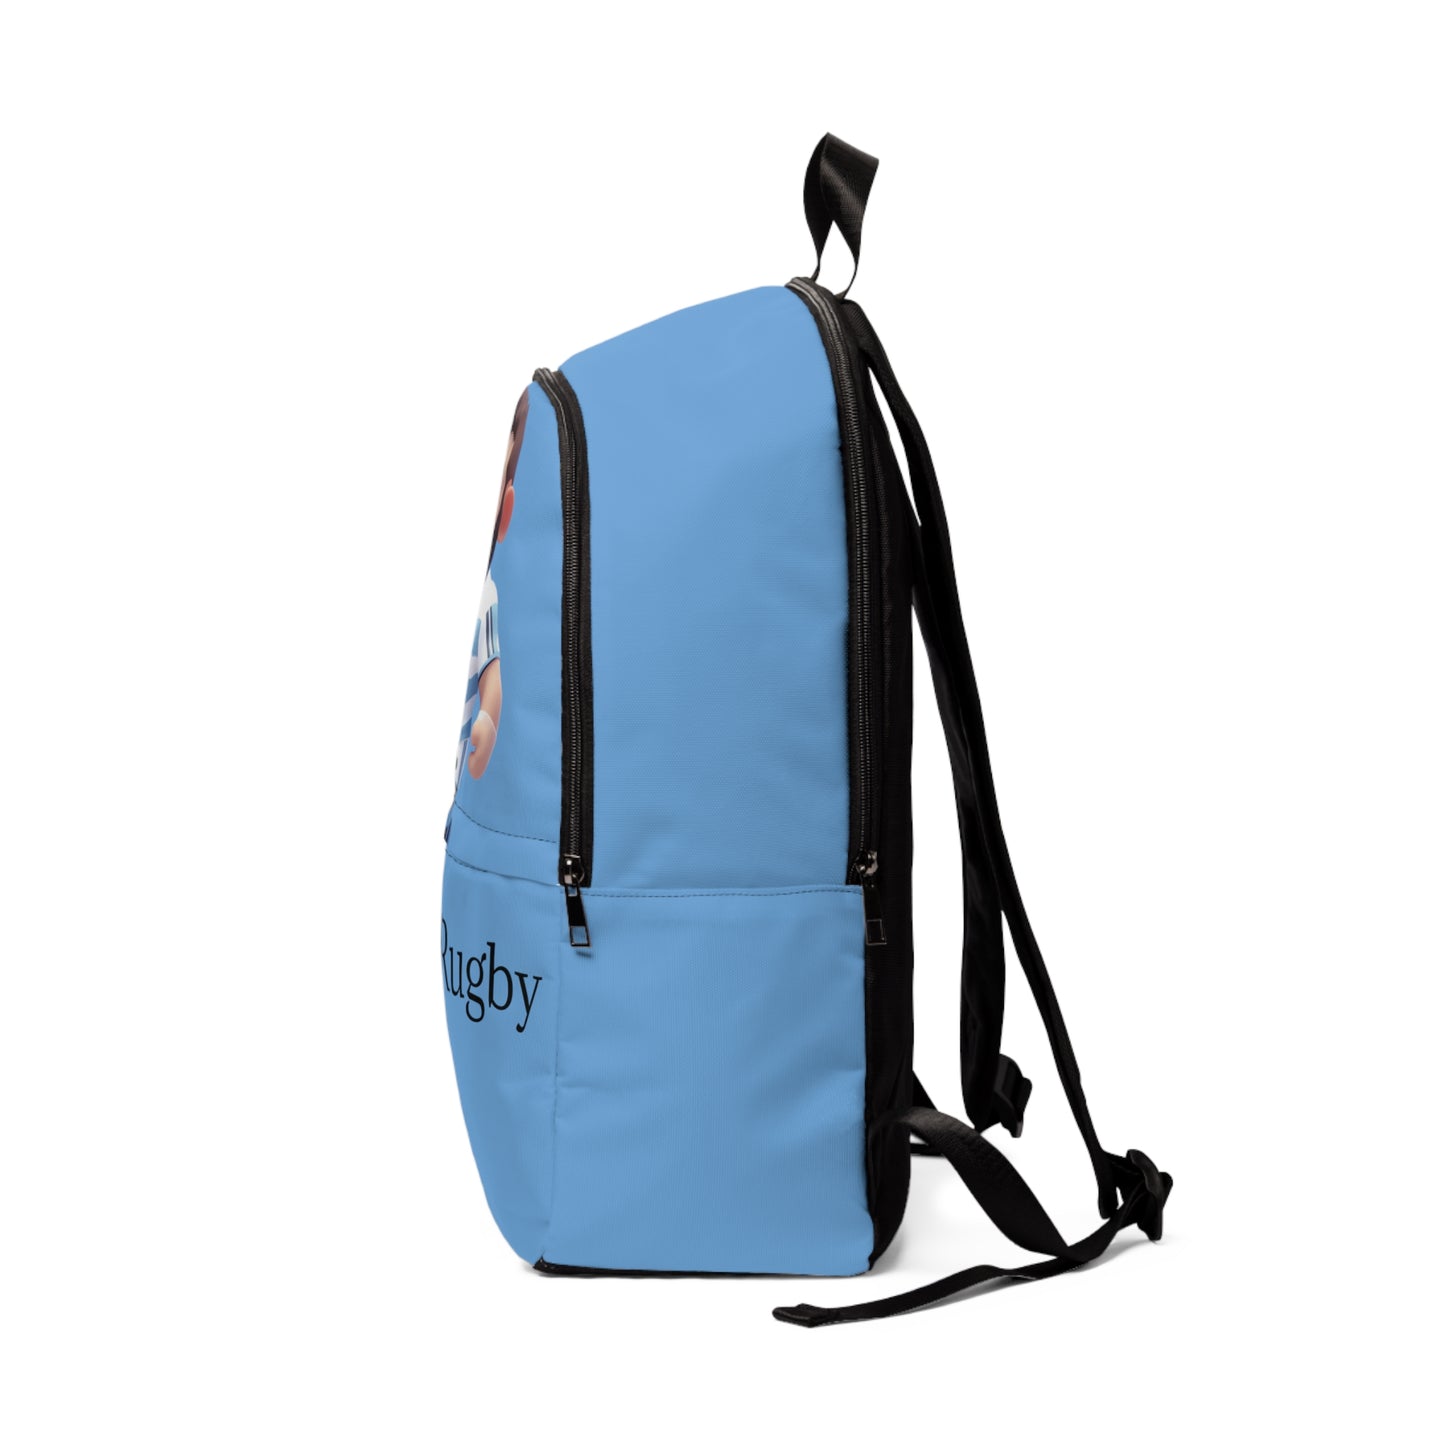 Pumas backpack